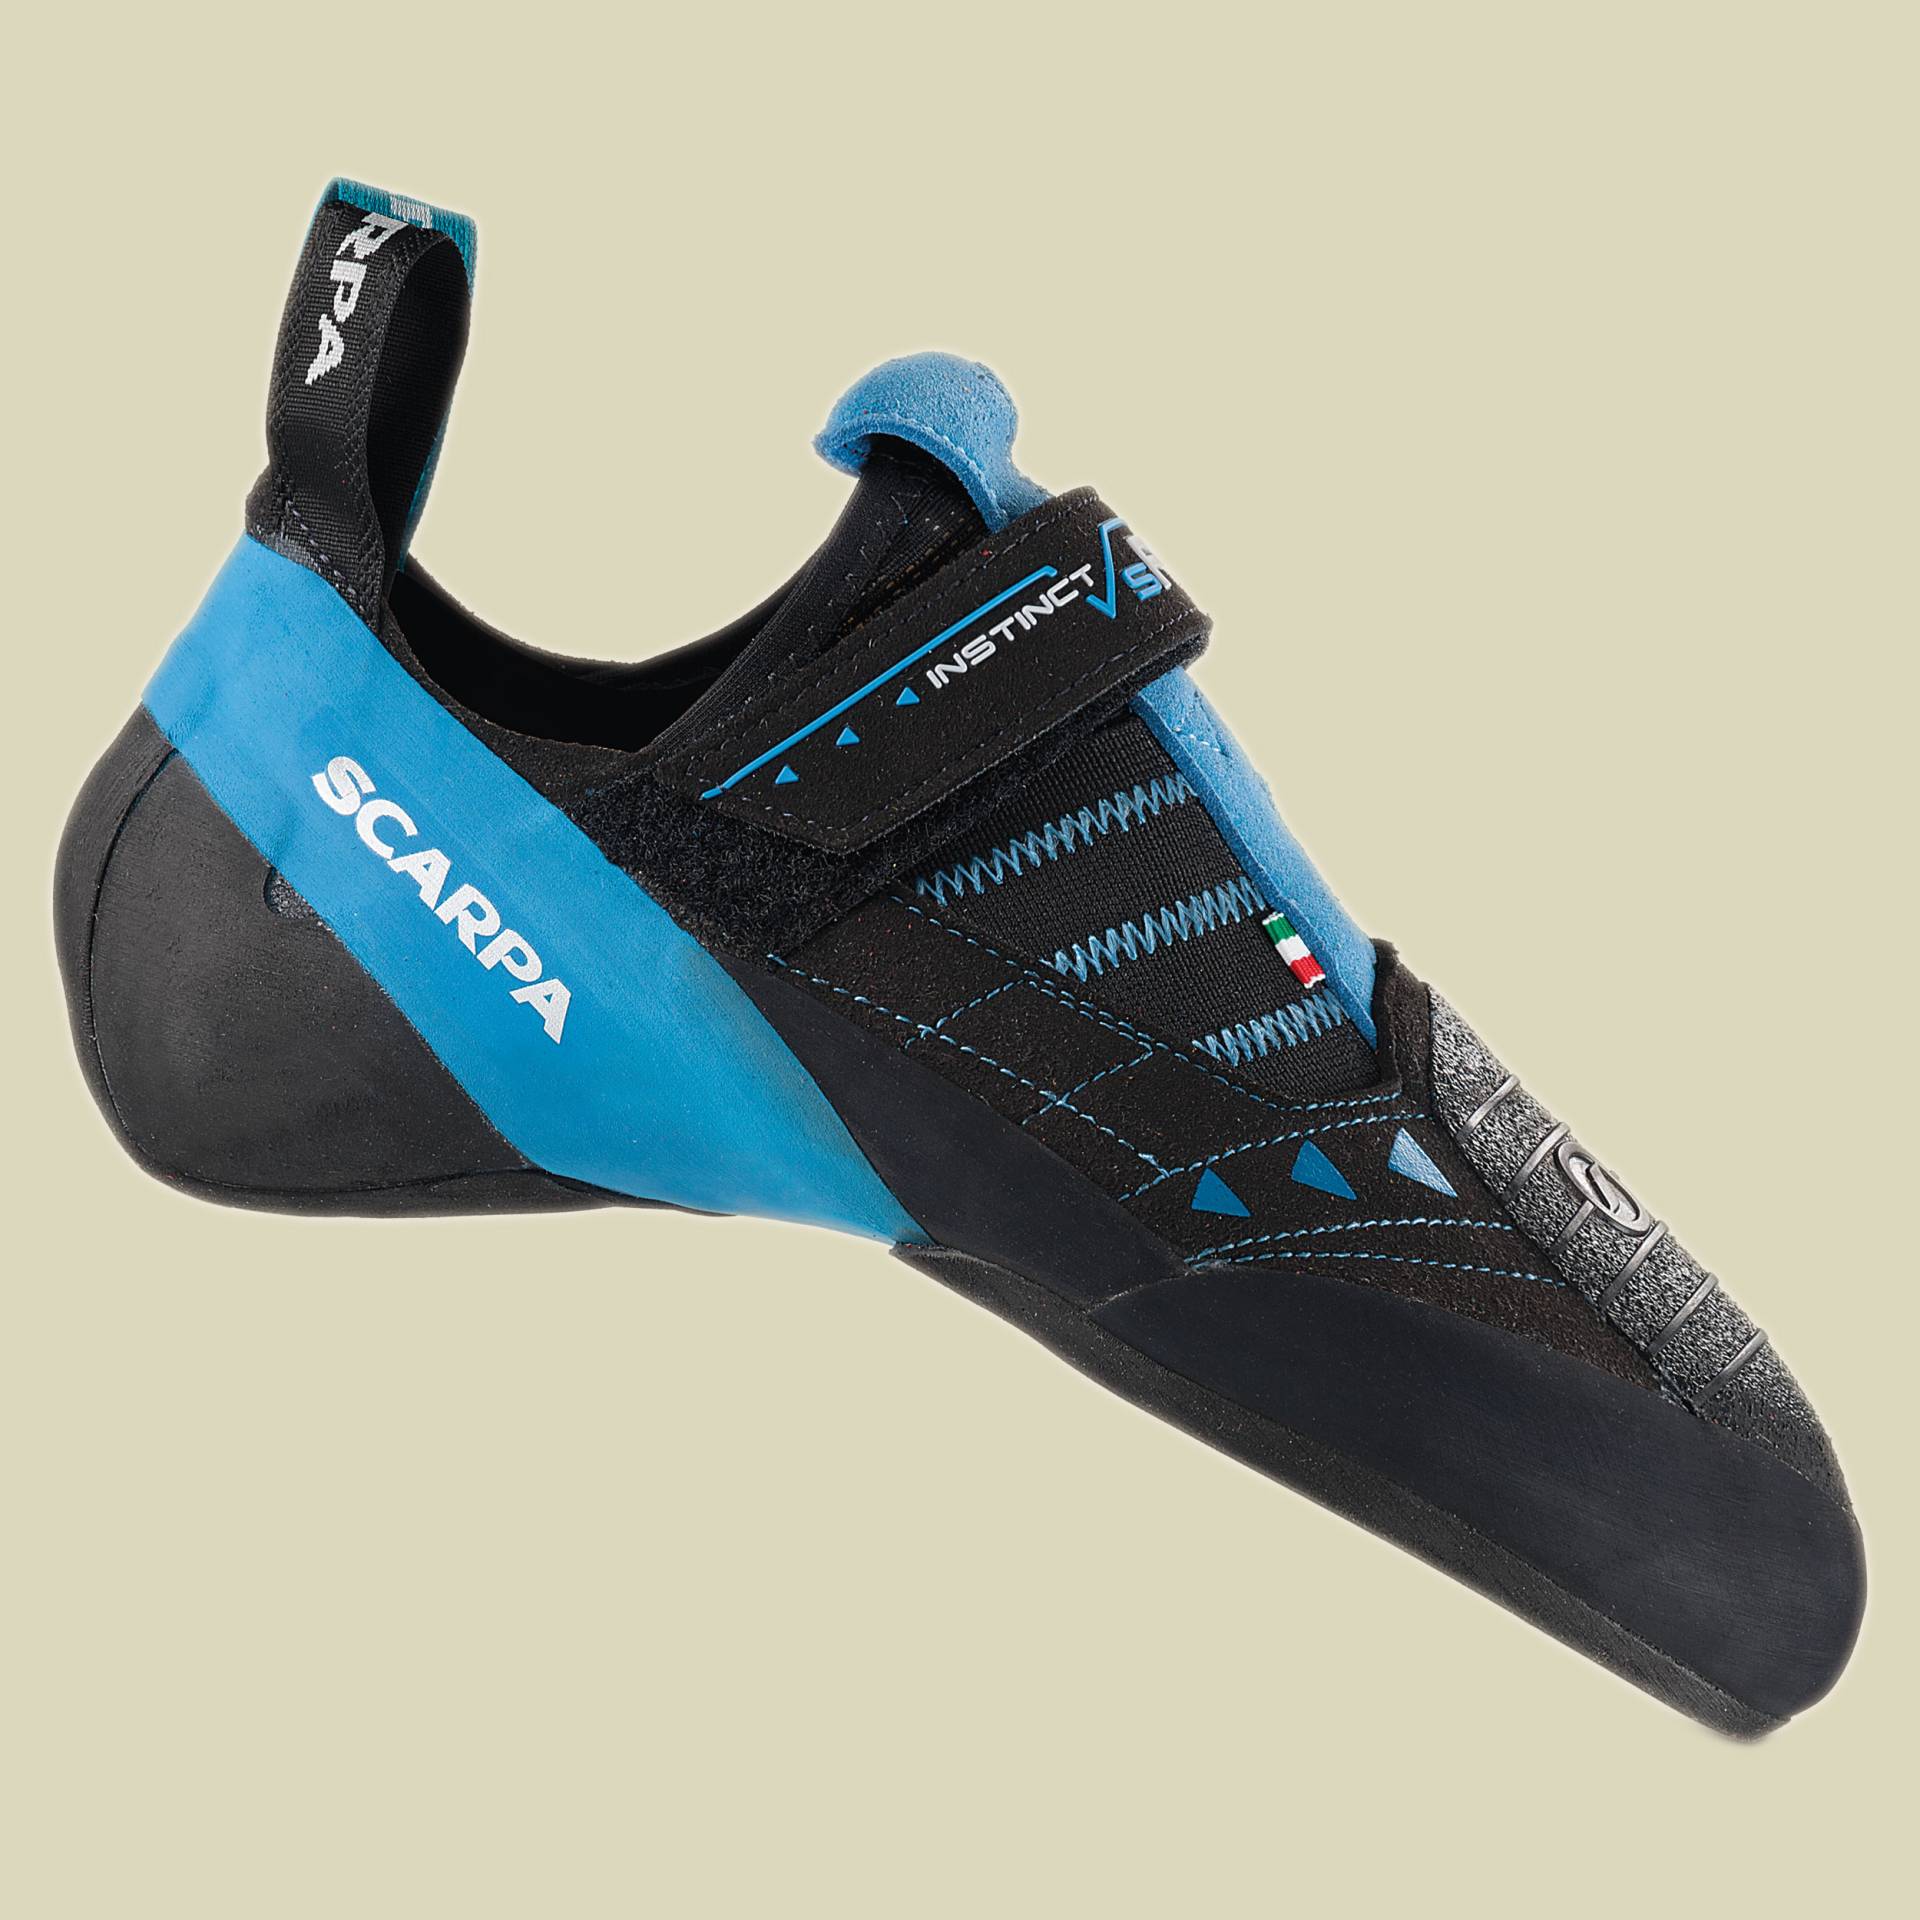 Instinct VSR Größe 43,5 Farbe black/azure von Scarpa Schuhe